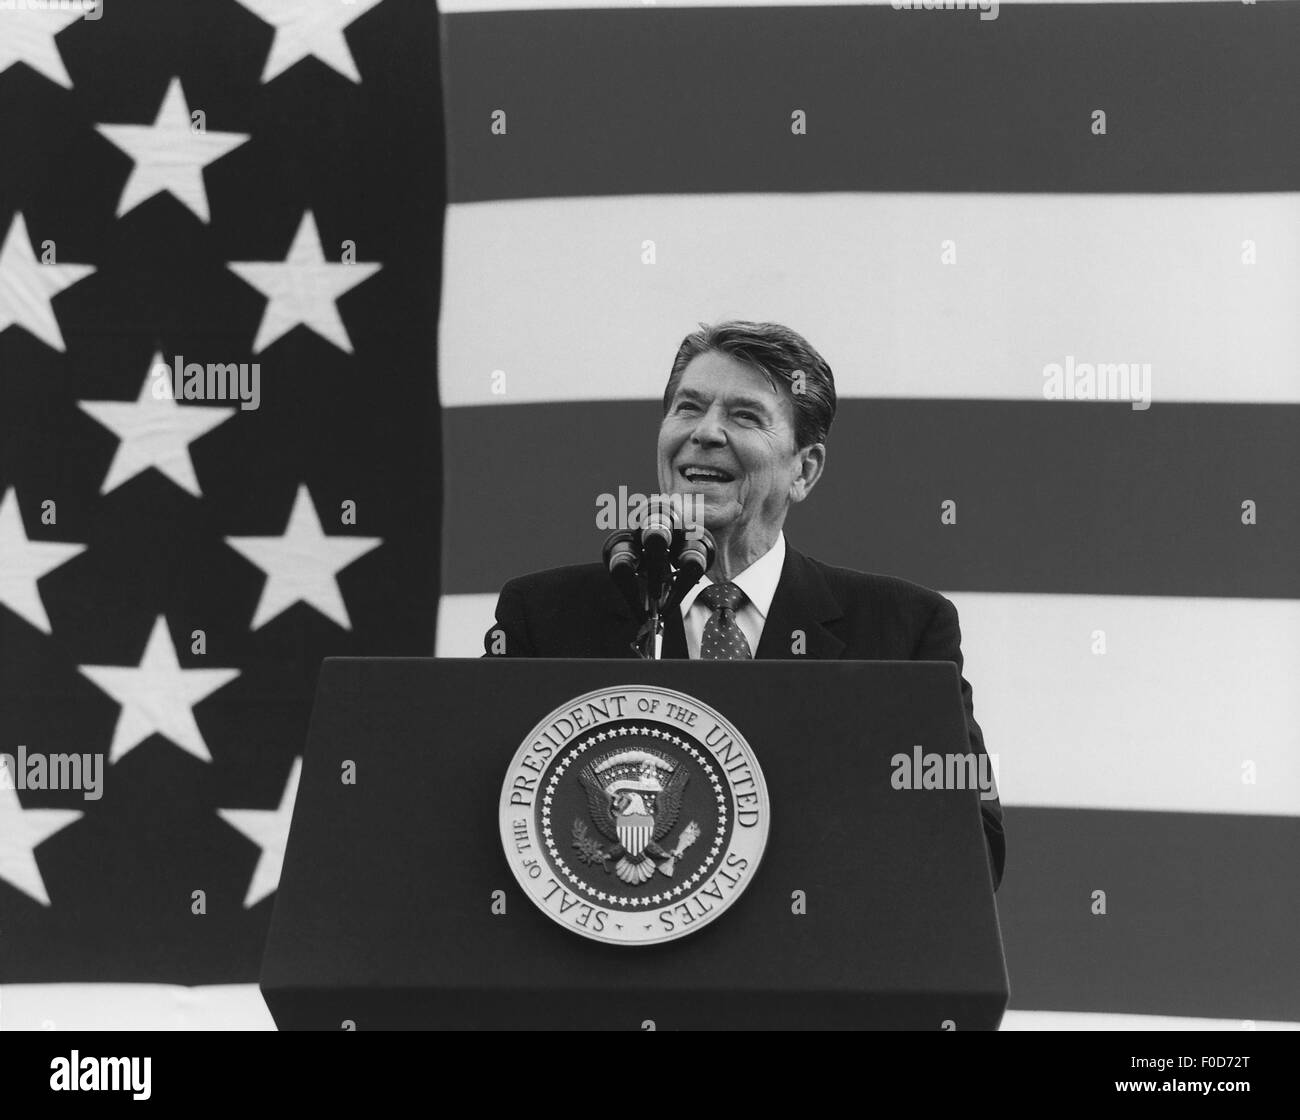 Le président Ronald Reagan s'exprimant devant un grand drapeau américain. Banque D'Images